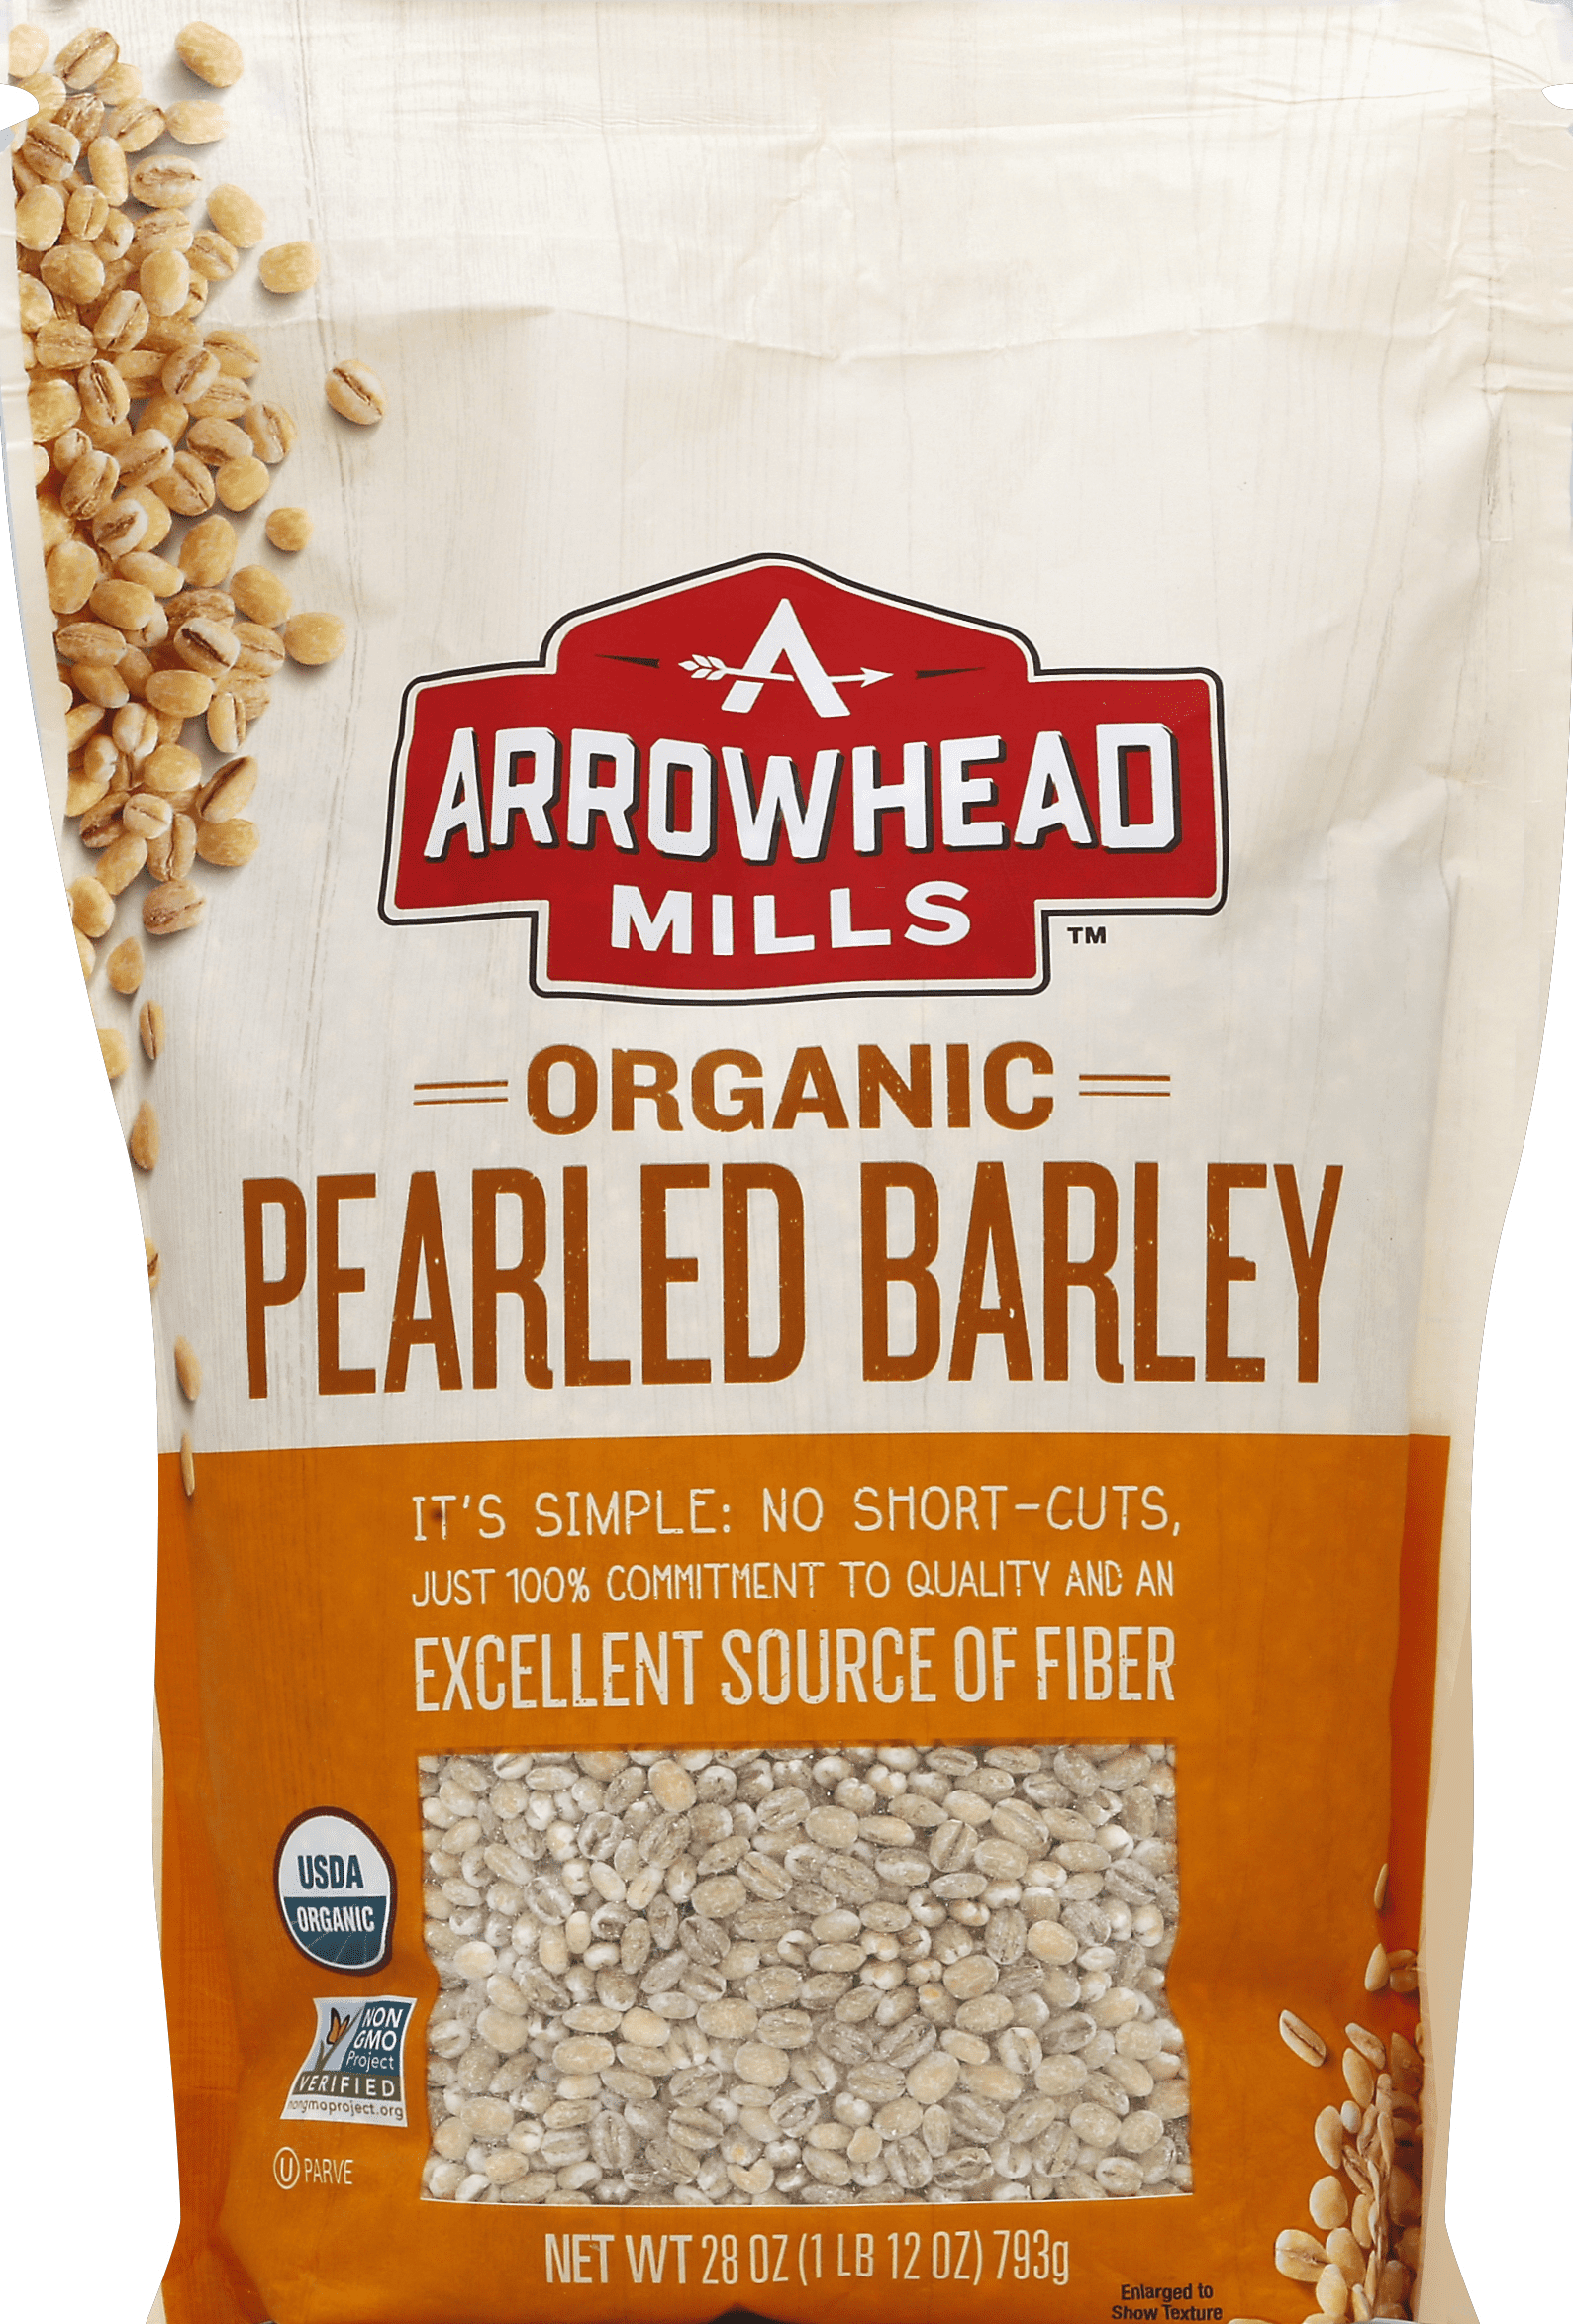 Arrowhead Mills Pearled Barley 6 units per case 28.0 oz